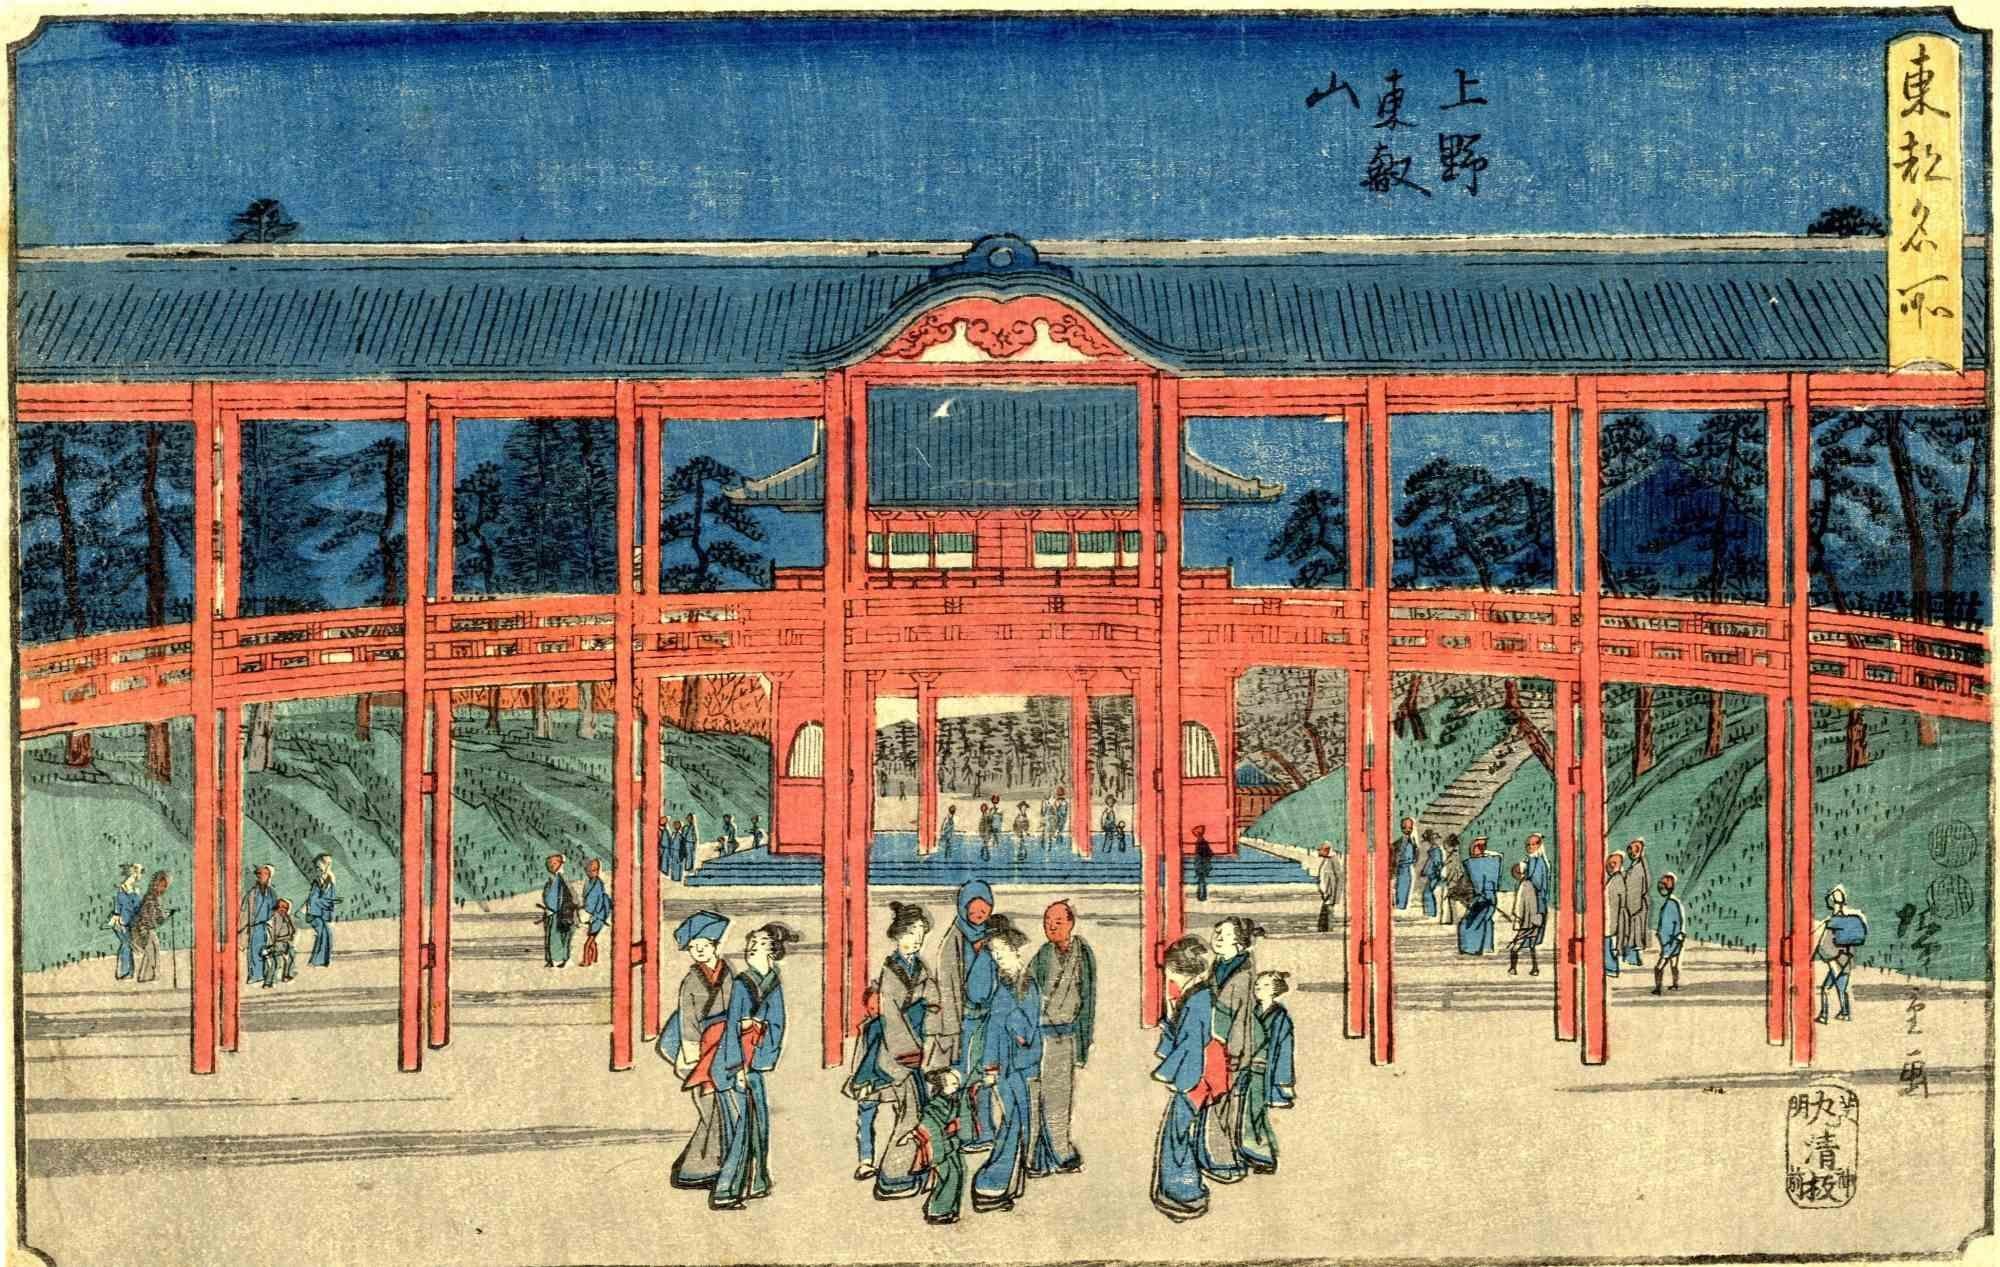 Le temple Toeizan à Ueno est une œuvre d'art moderne originale réalisée par Utagawa Hiroshige (1797 - 1858) dans les années 1840.

De la série "Toto meisho" (Vues célèbres de Tokyo).

Oban. Dimensions : 38 x 24,5 cm.

Visite du temple de nuit,